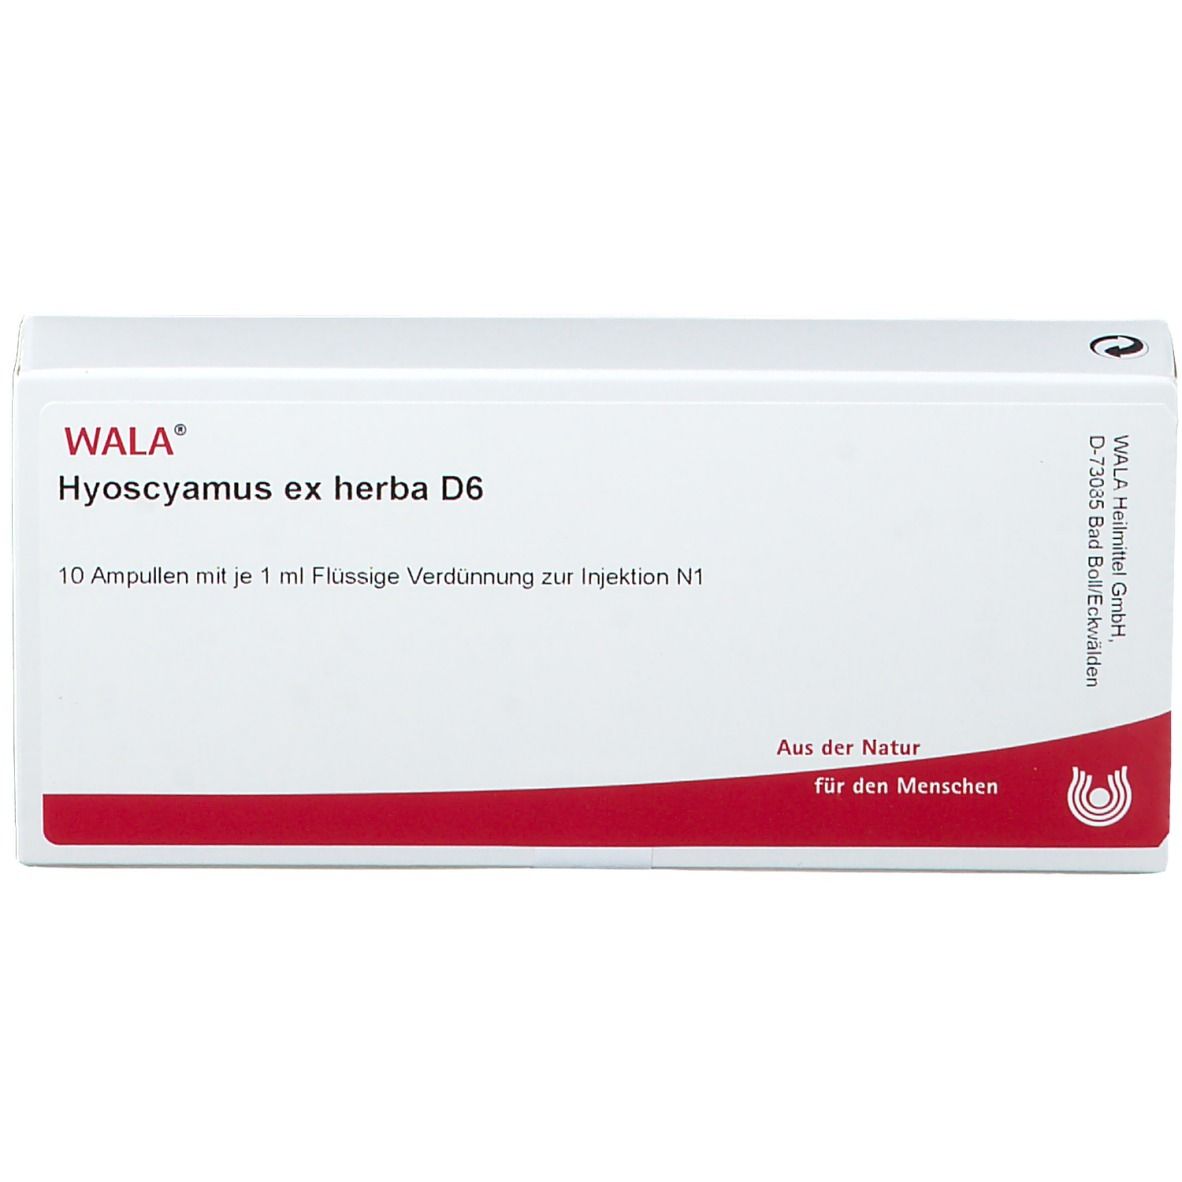 WALA® Hyoscyamus ex herba D 6